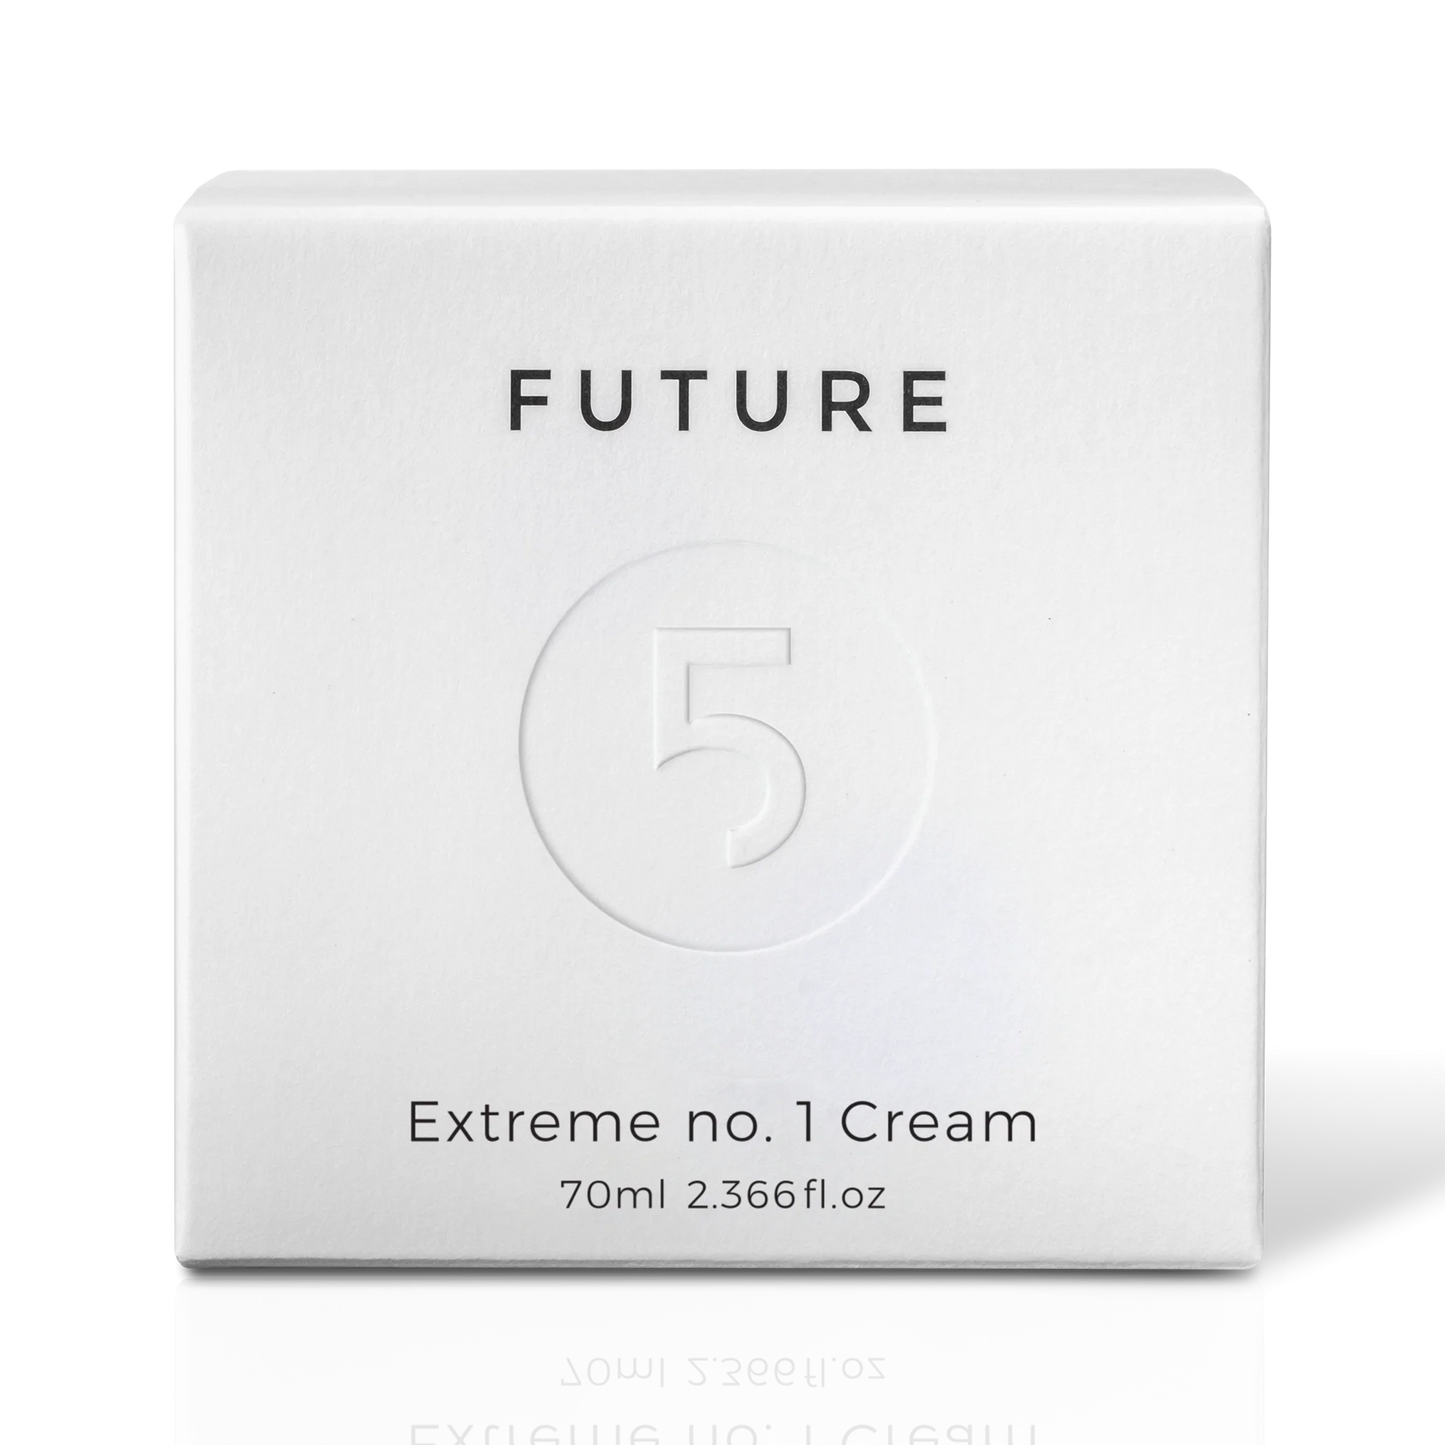 Extreme No. 1 Cream